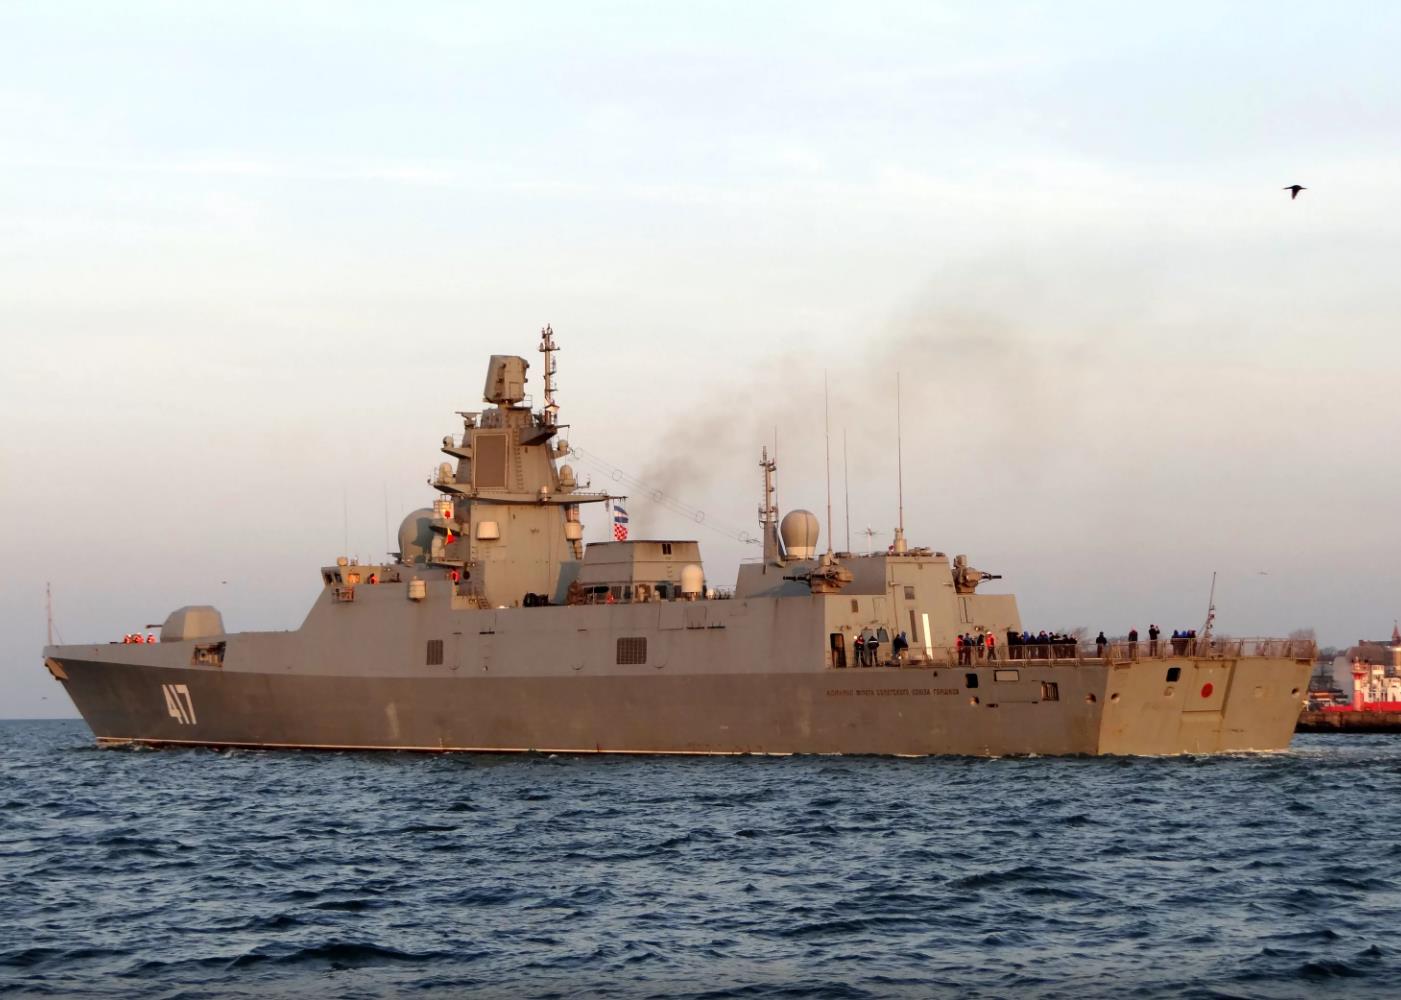 俄海军22350型护卫舰搭载大量攻击性武器凸显俄现实无奈